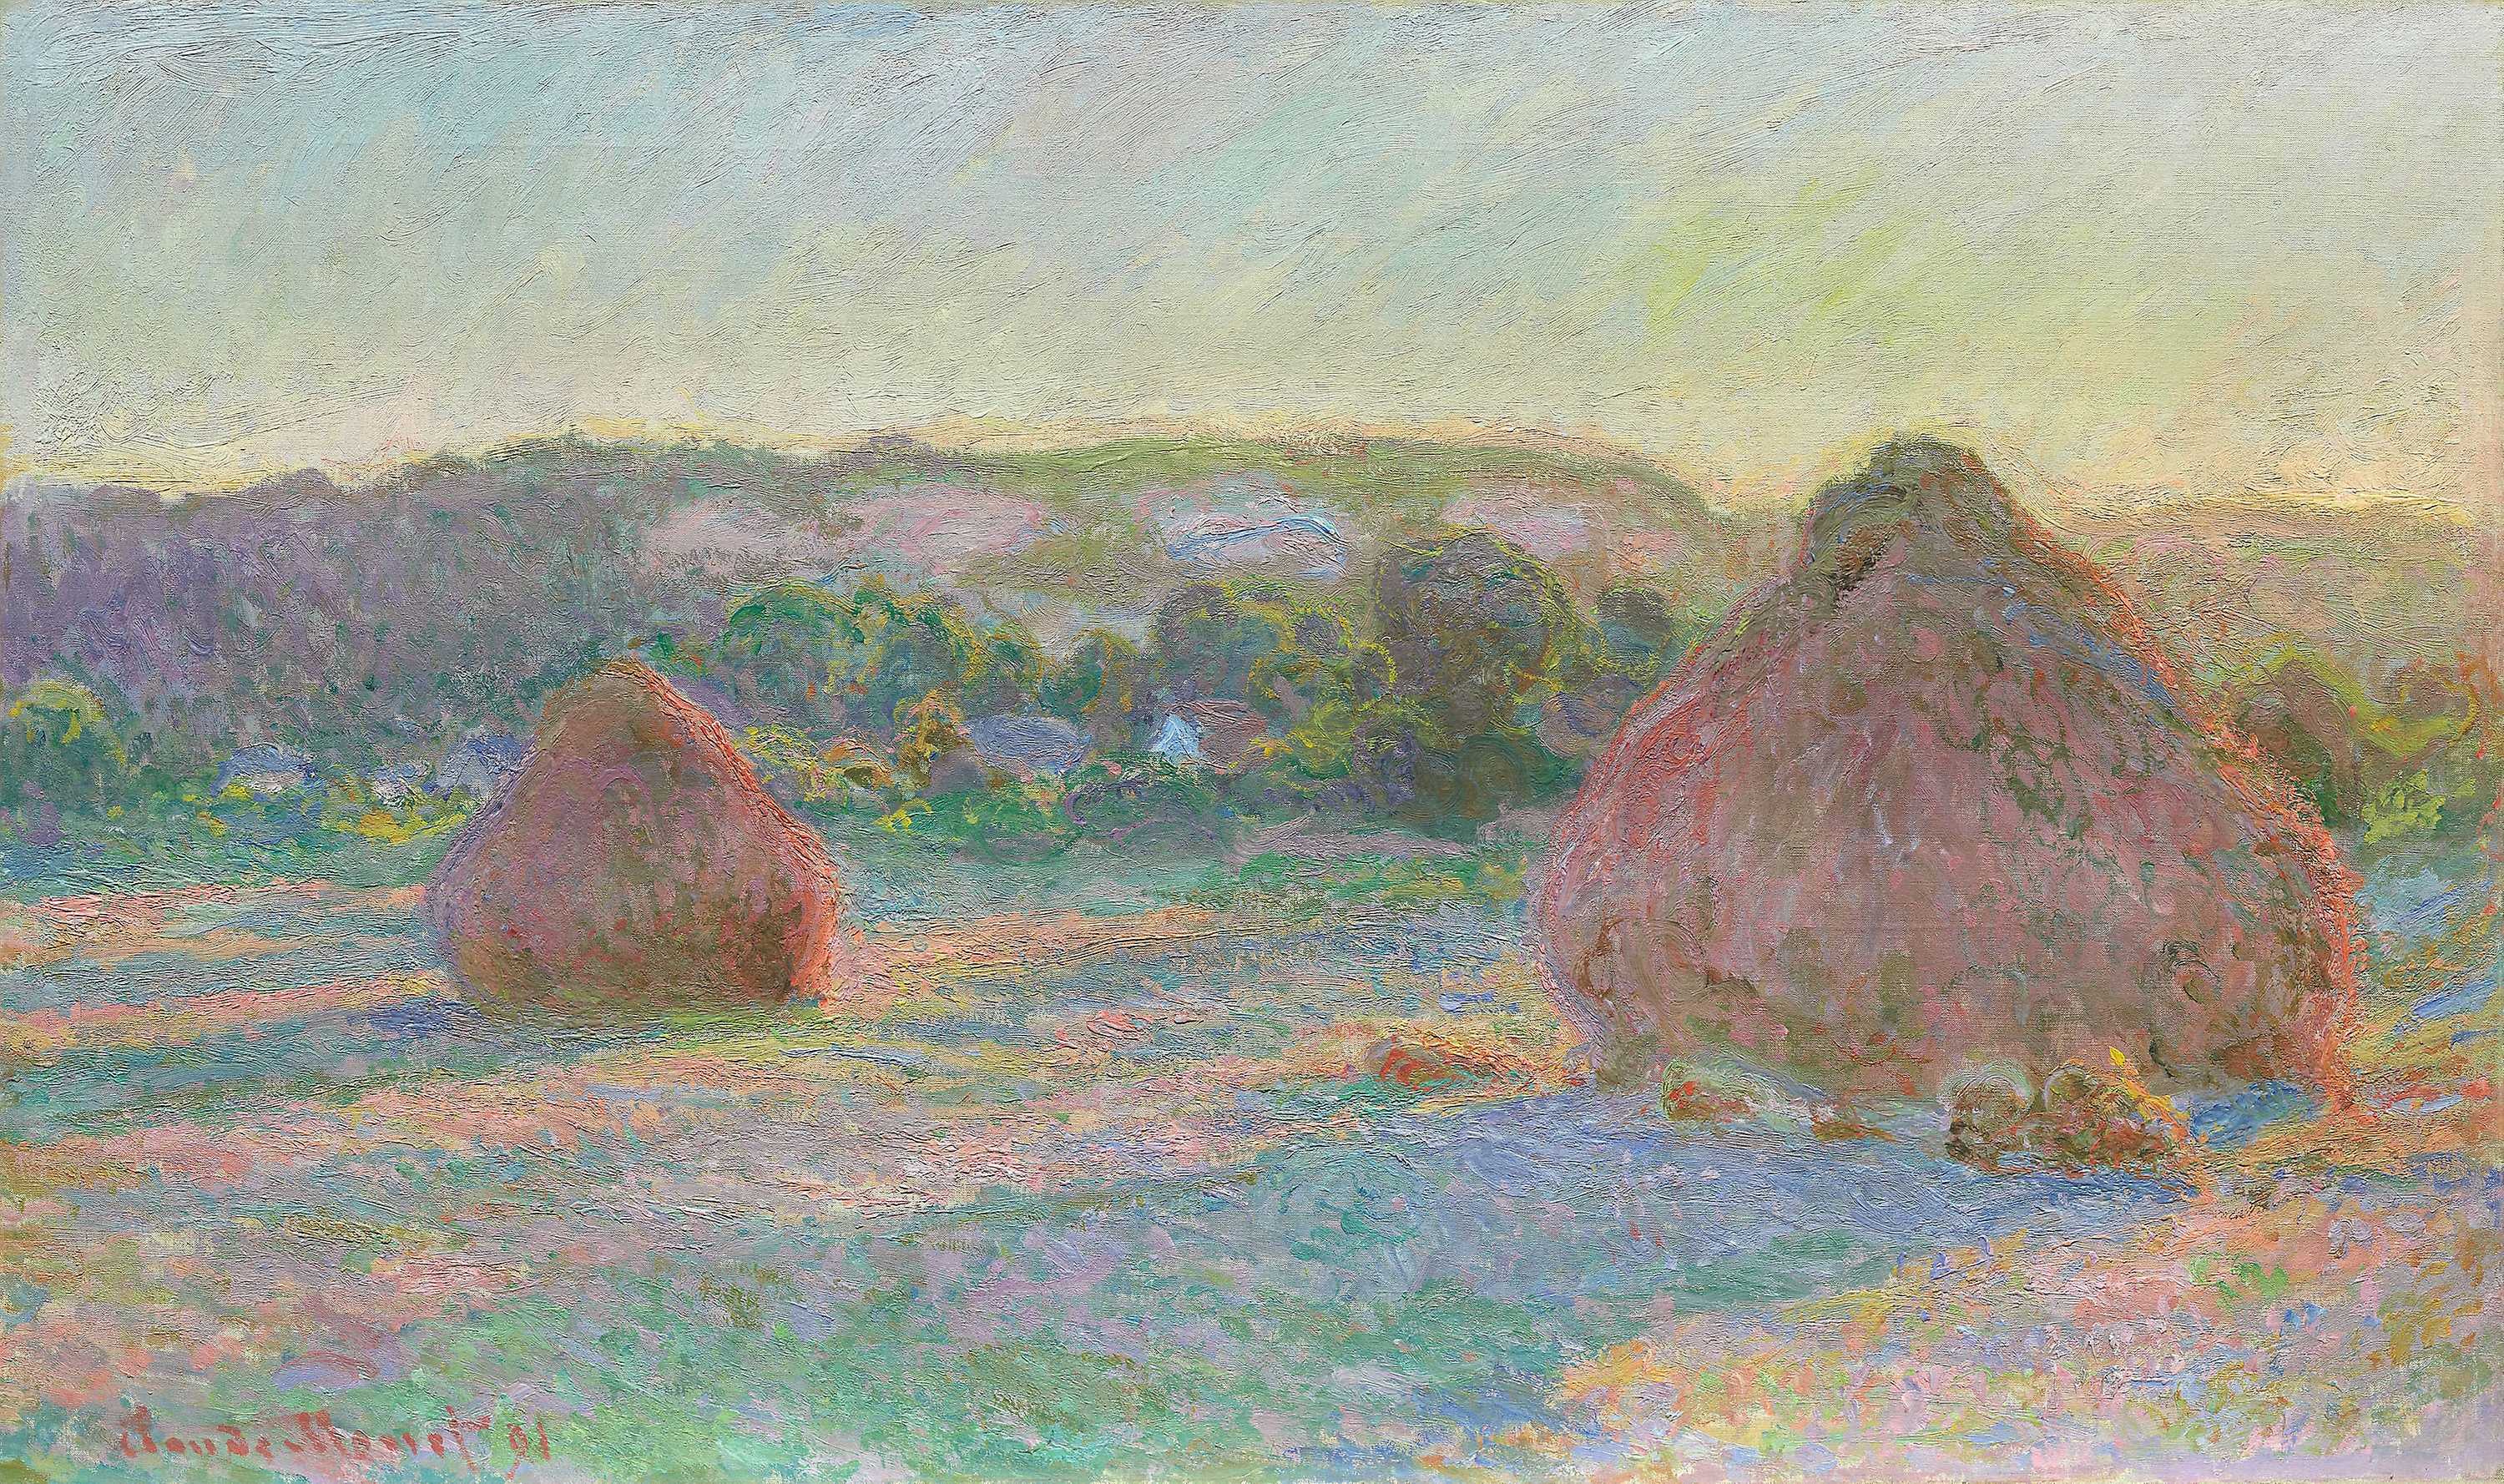 Almiares de trigo (finales de verano) by Claude Monet - 1891 - 60 x 100.5 cm Instituto de Arte de Chicago